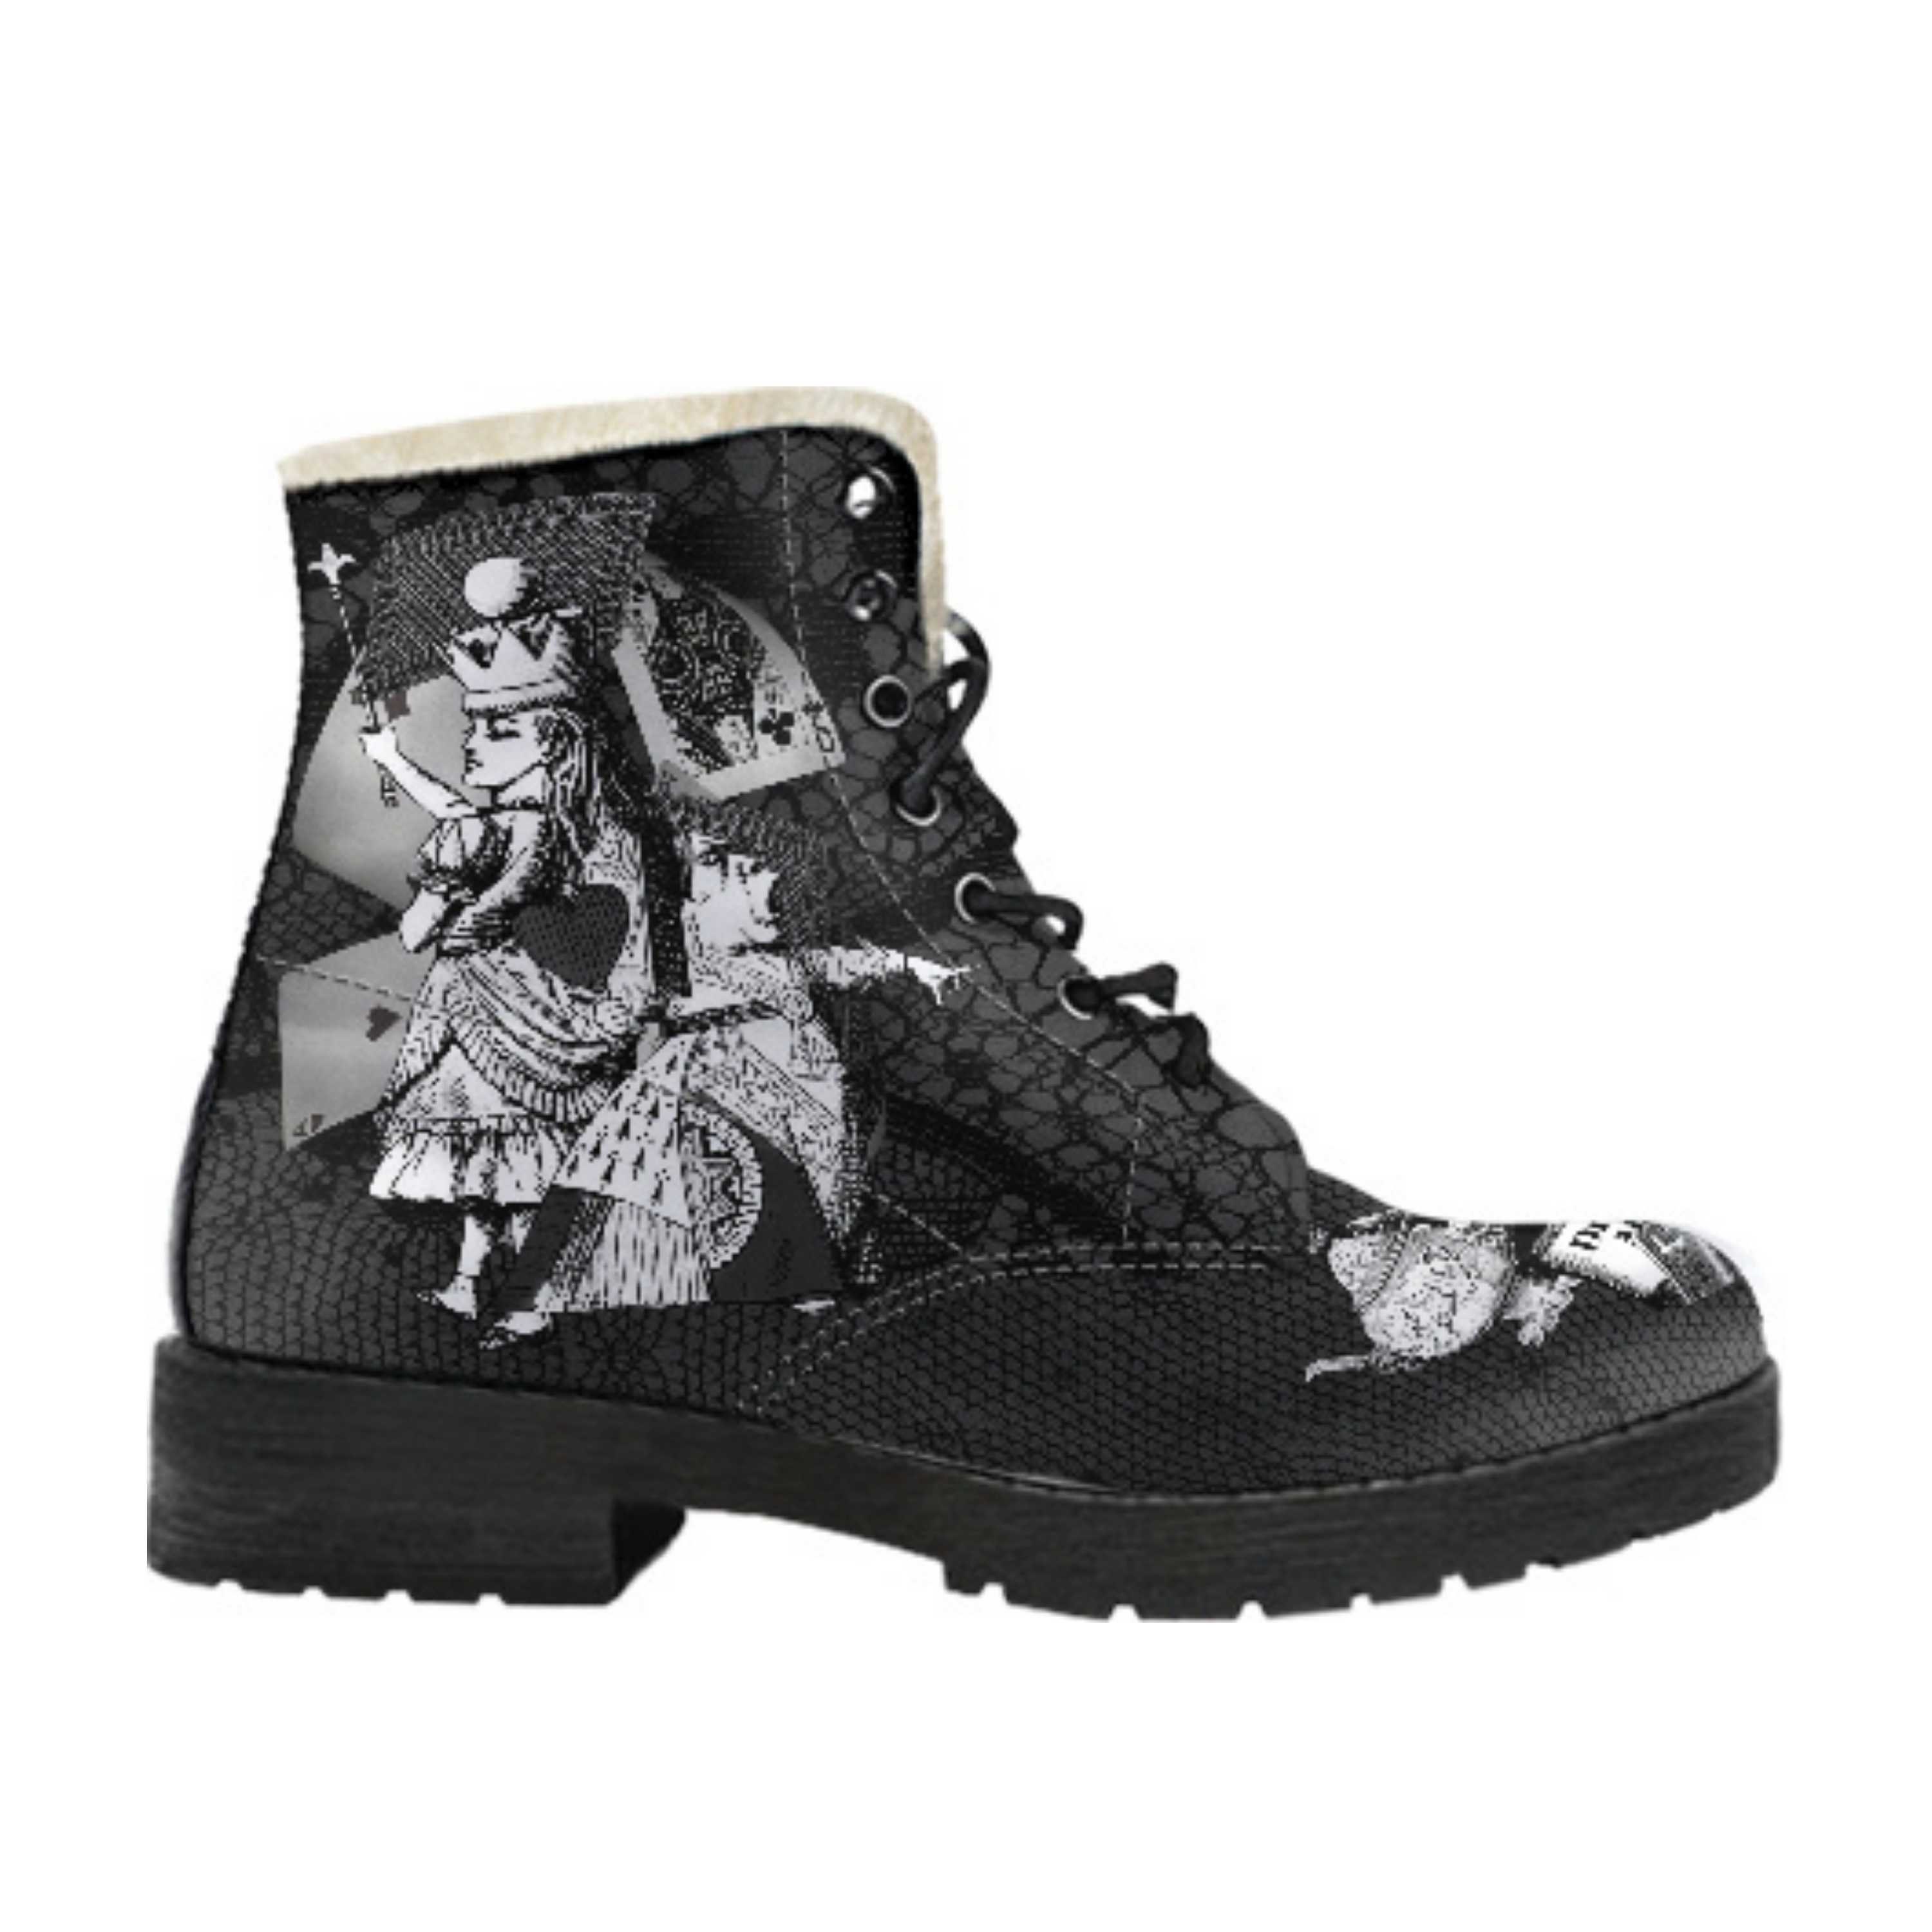 Faux Fur Combat Boots Zwart Kant Print Schoenen damesschoenen Laarzen Werklaarzen & Kisten Alice in Wonderland Geschenken #34 Rode Serie aangepaste schoenen Verjaardagscadeau idee 